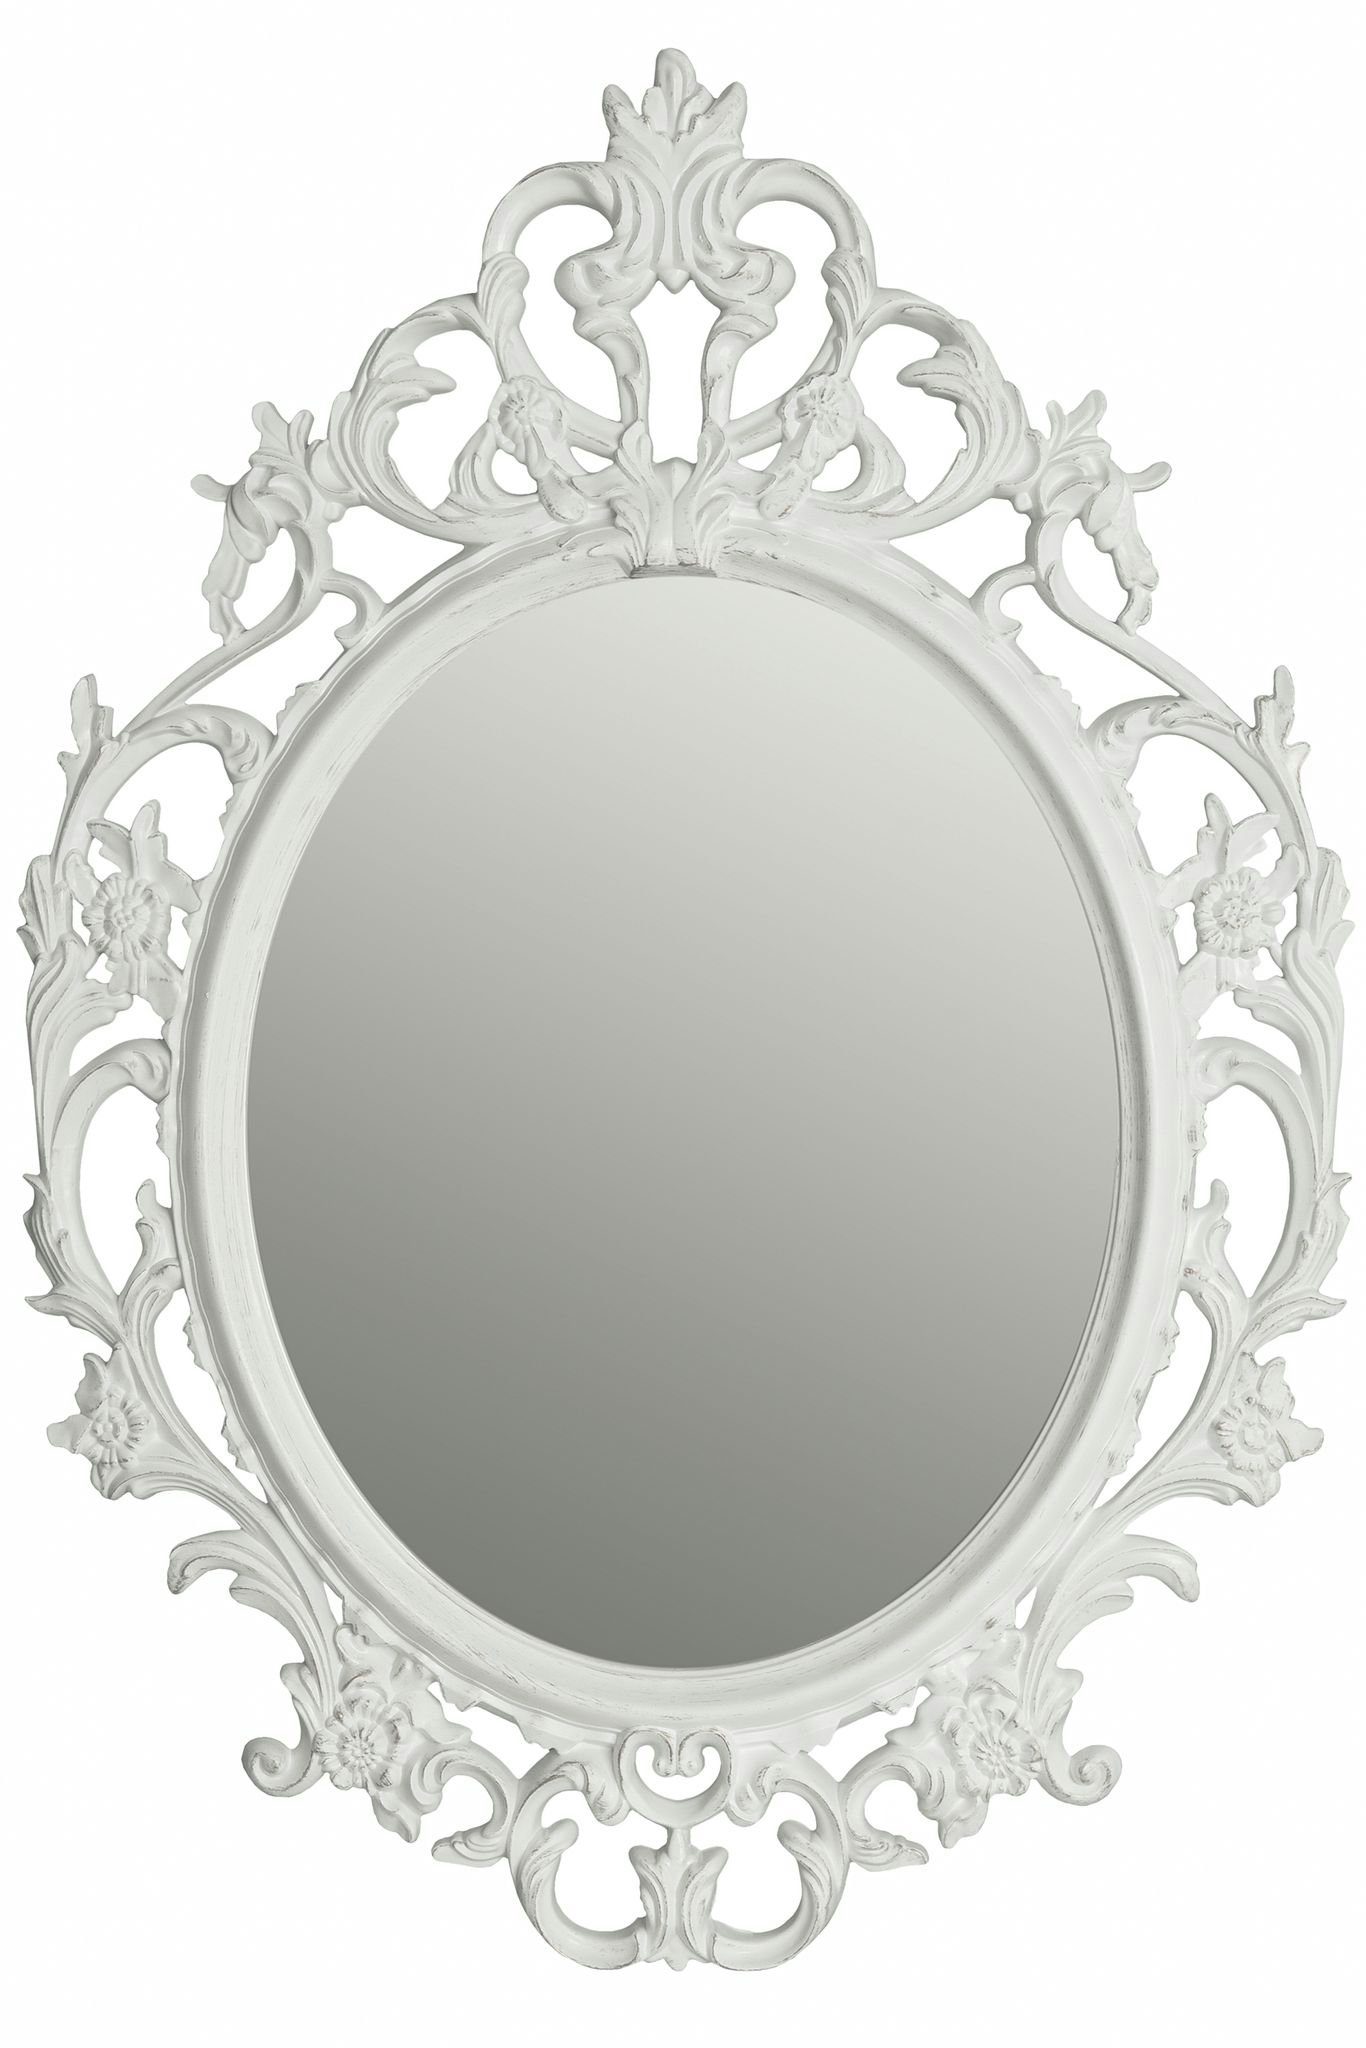 elbmöbel Wandspiegel Spiegel weiß weiß Barock Badspiegel barock Wandspiegel Spiegel Oval oval Barockspiegel Barockspiegel